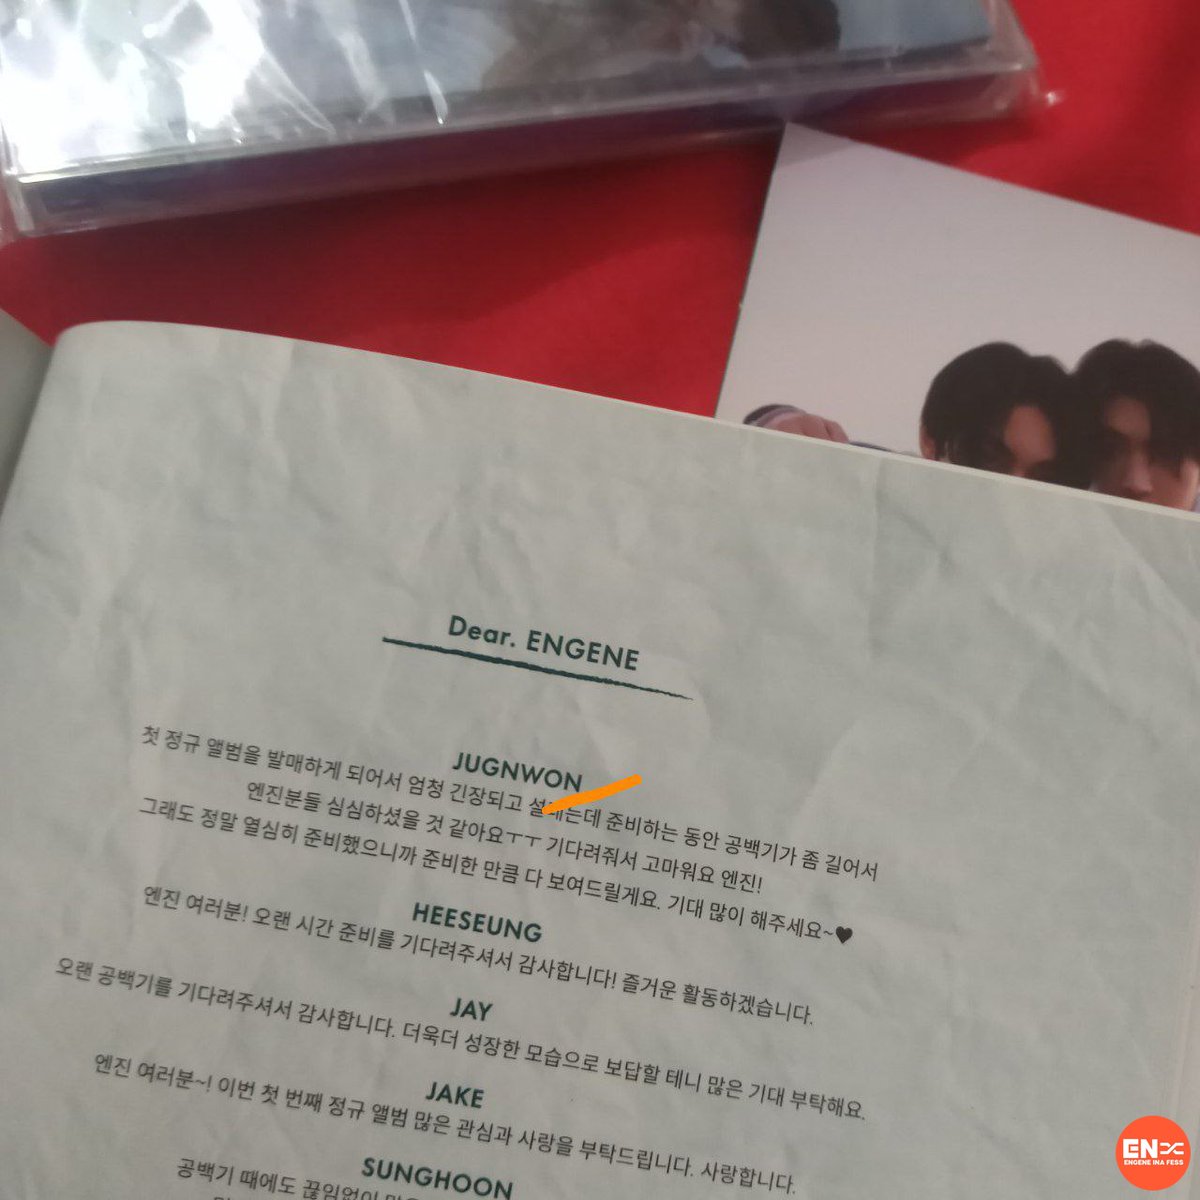 -en jin sender baru sadar tulisan jungwon di album dilemma esse ver. typo😭😭 kalian yg punya album ini gini juga ga si????